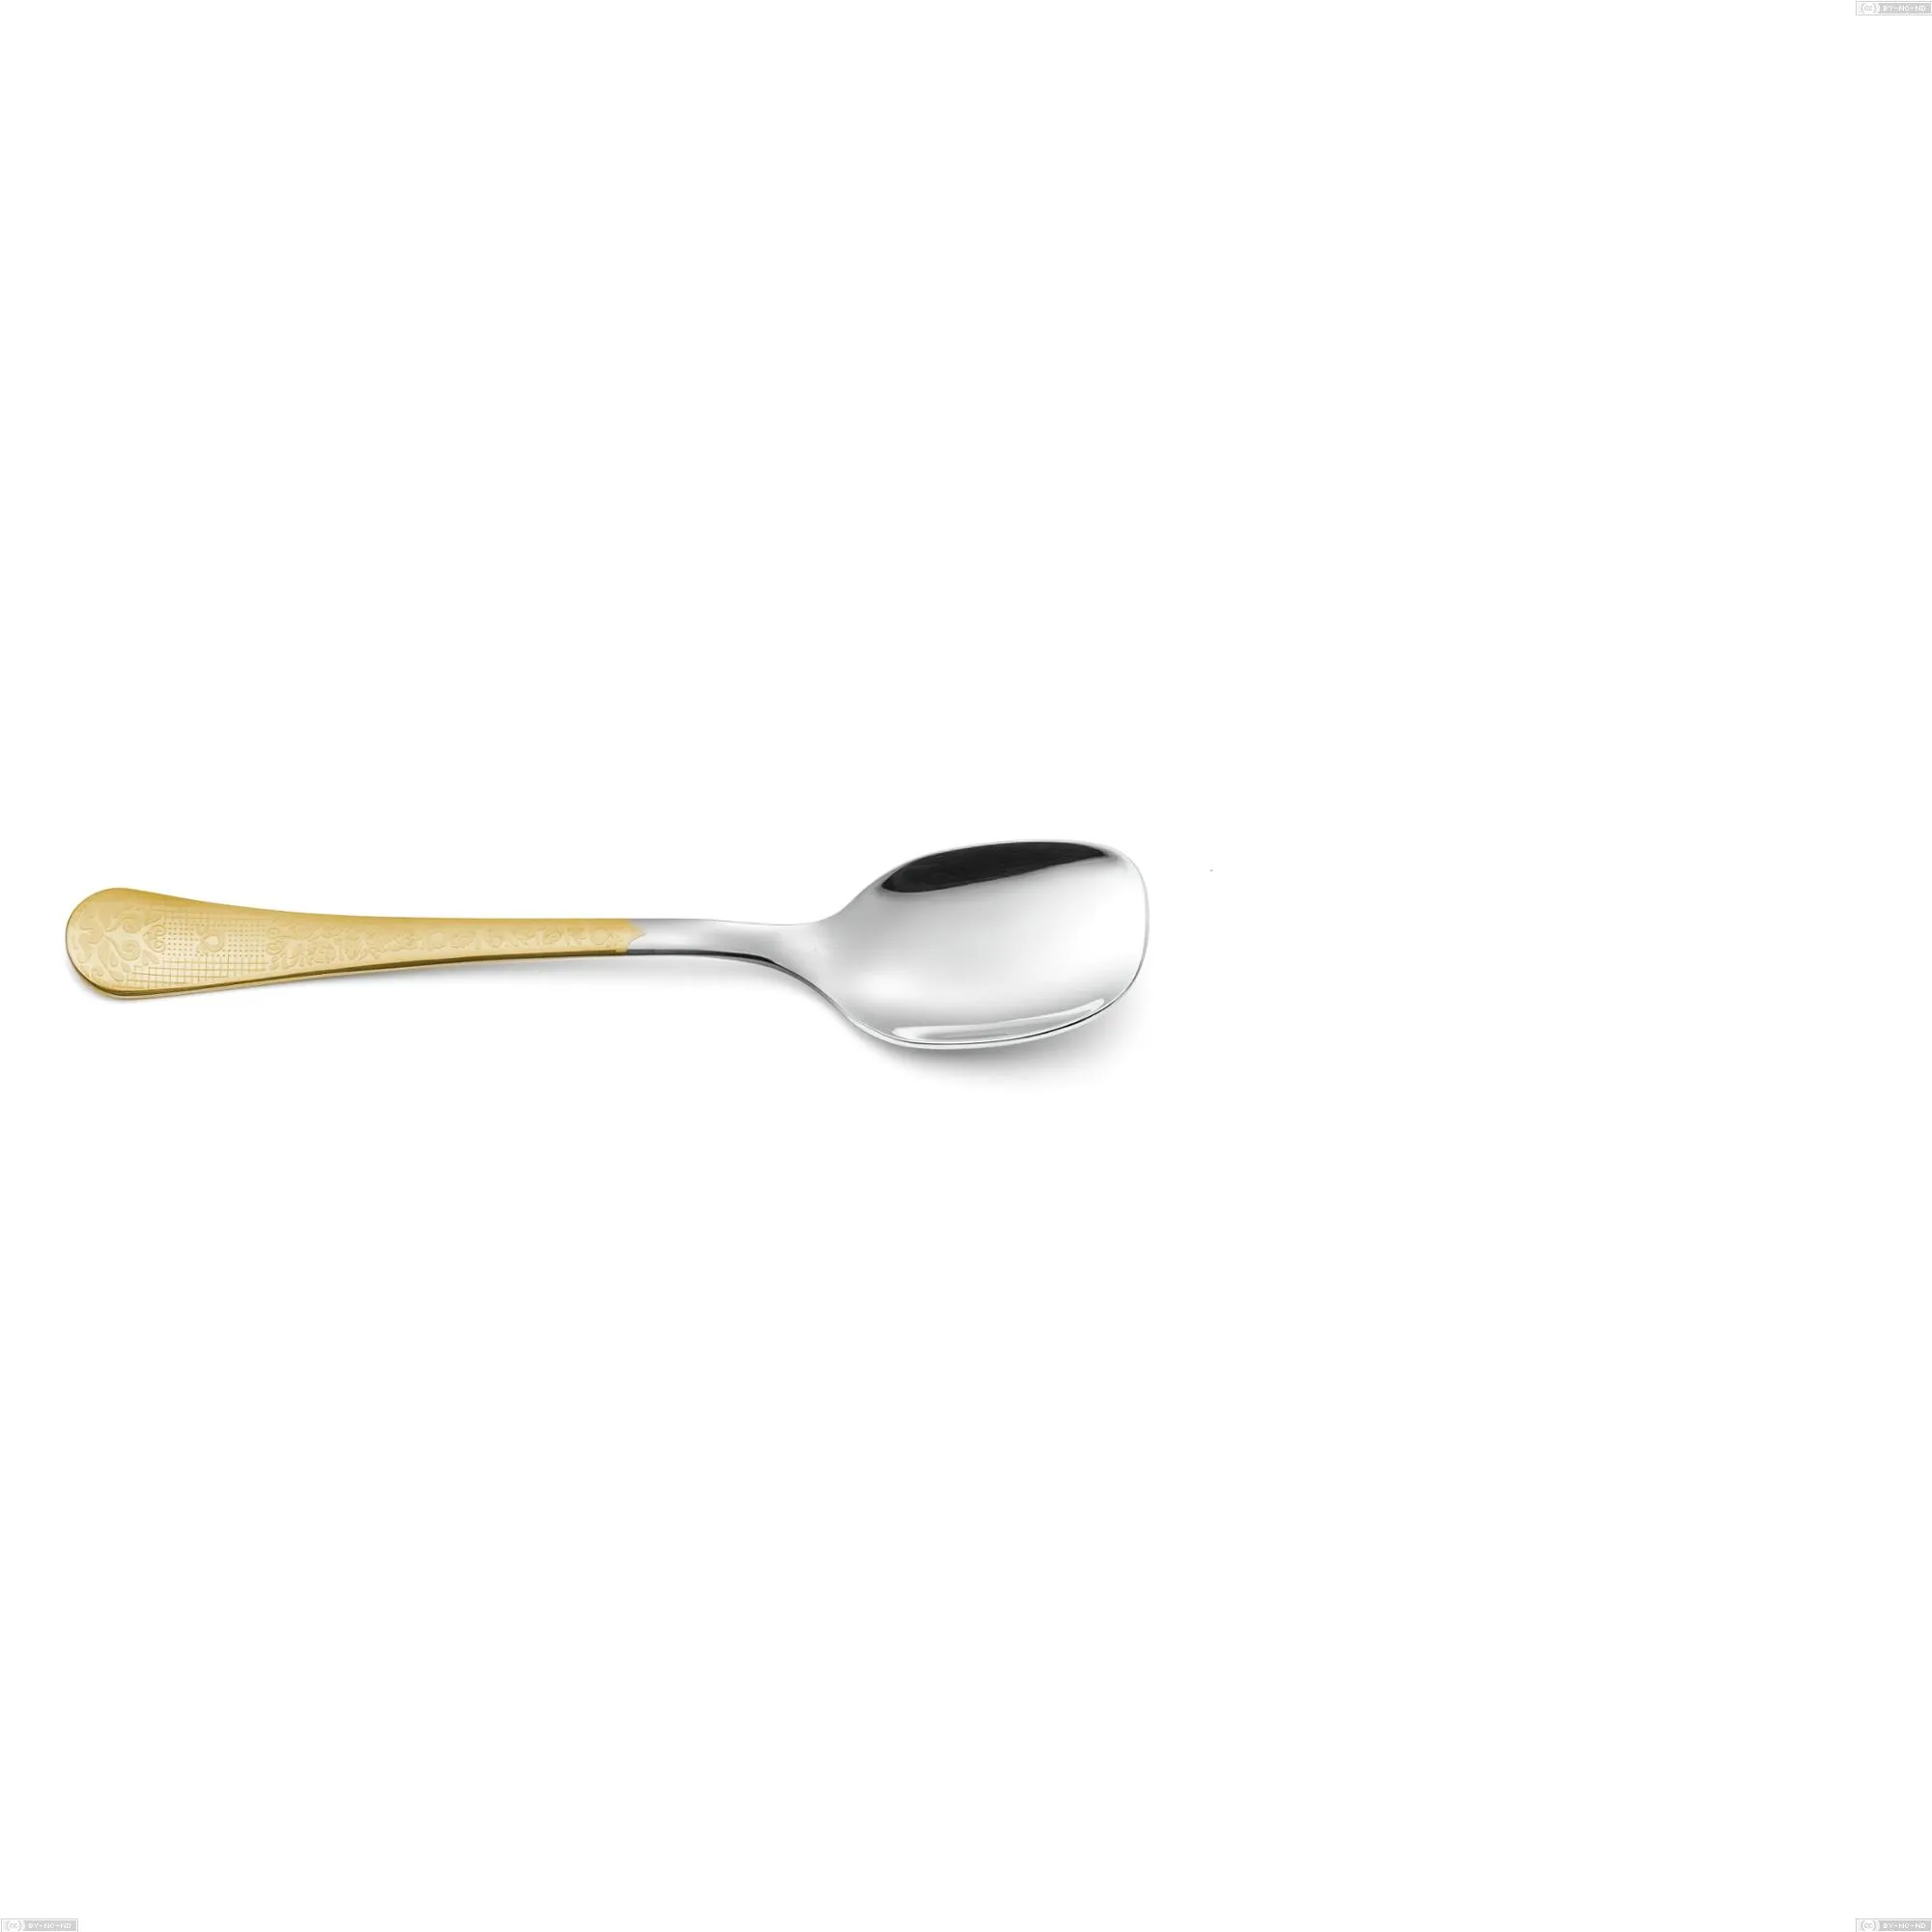 Cucchiaio gelato Hermitage oro, acciaio 18-10, oro 24 carati lucido, spessore 2.5 mm, lunghezza 141 mm